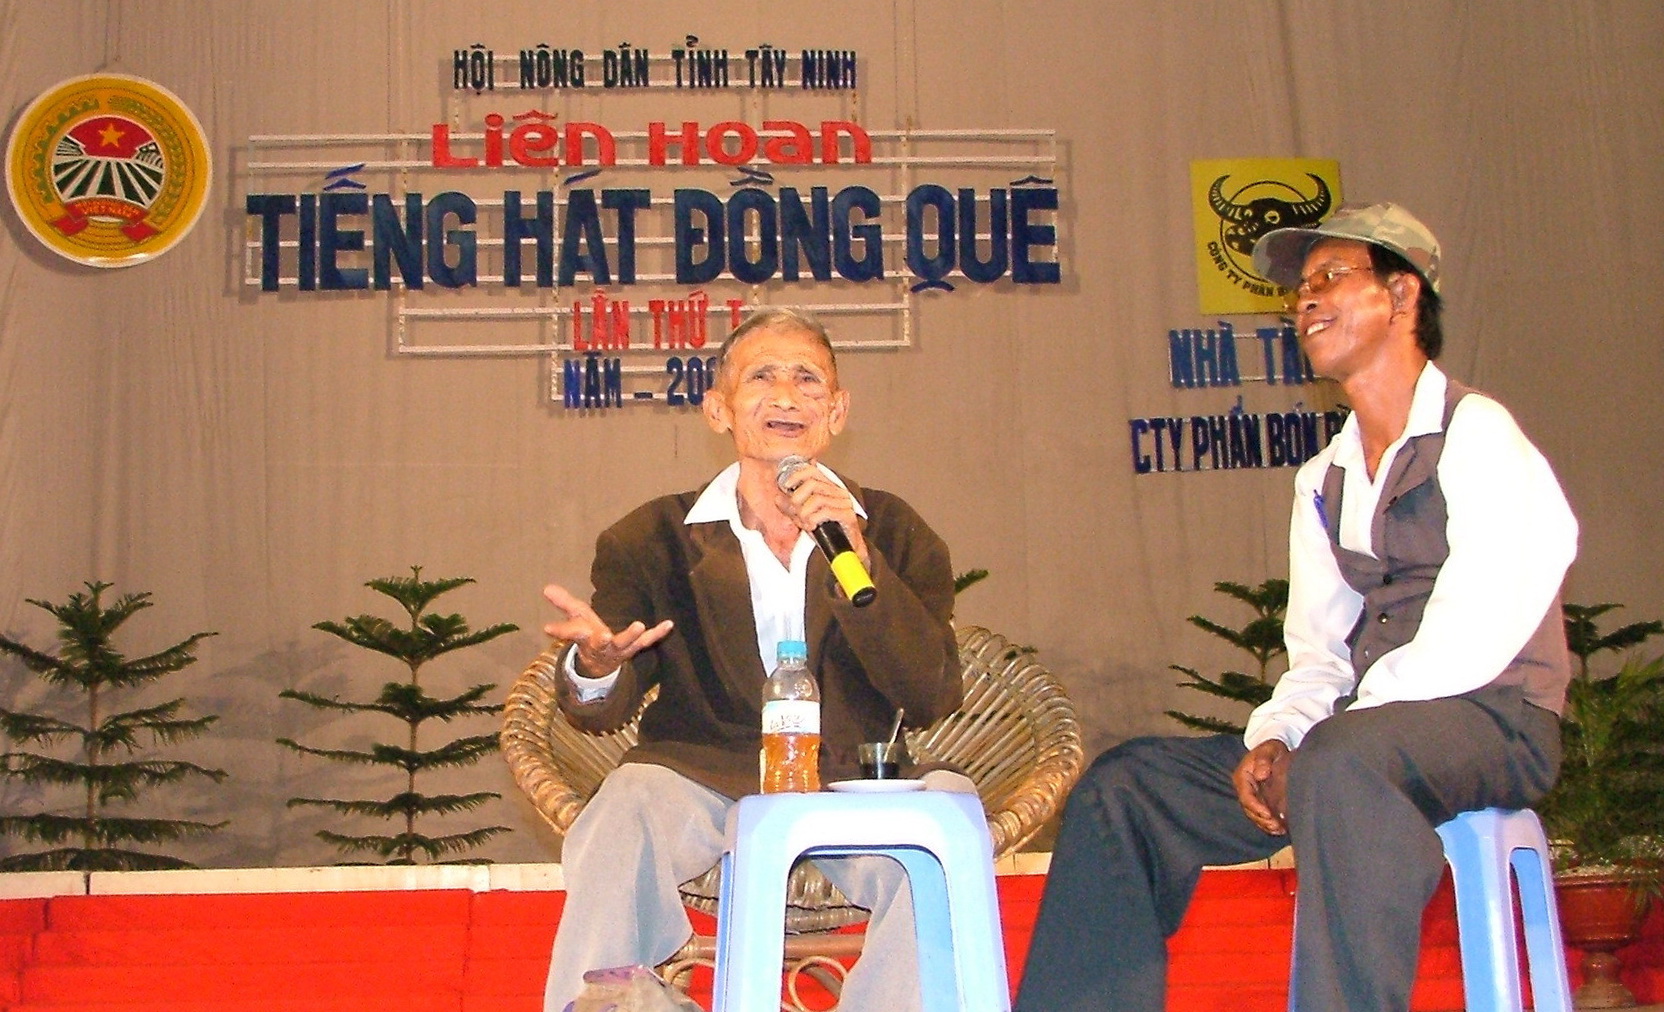 Cải lương Tây Ninh - thời vang bóng - Kỳ 2: Một đêm biểu diễn bằng hàng tháng tuyên truyền - Ảnh 1